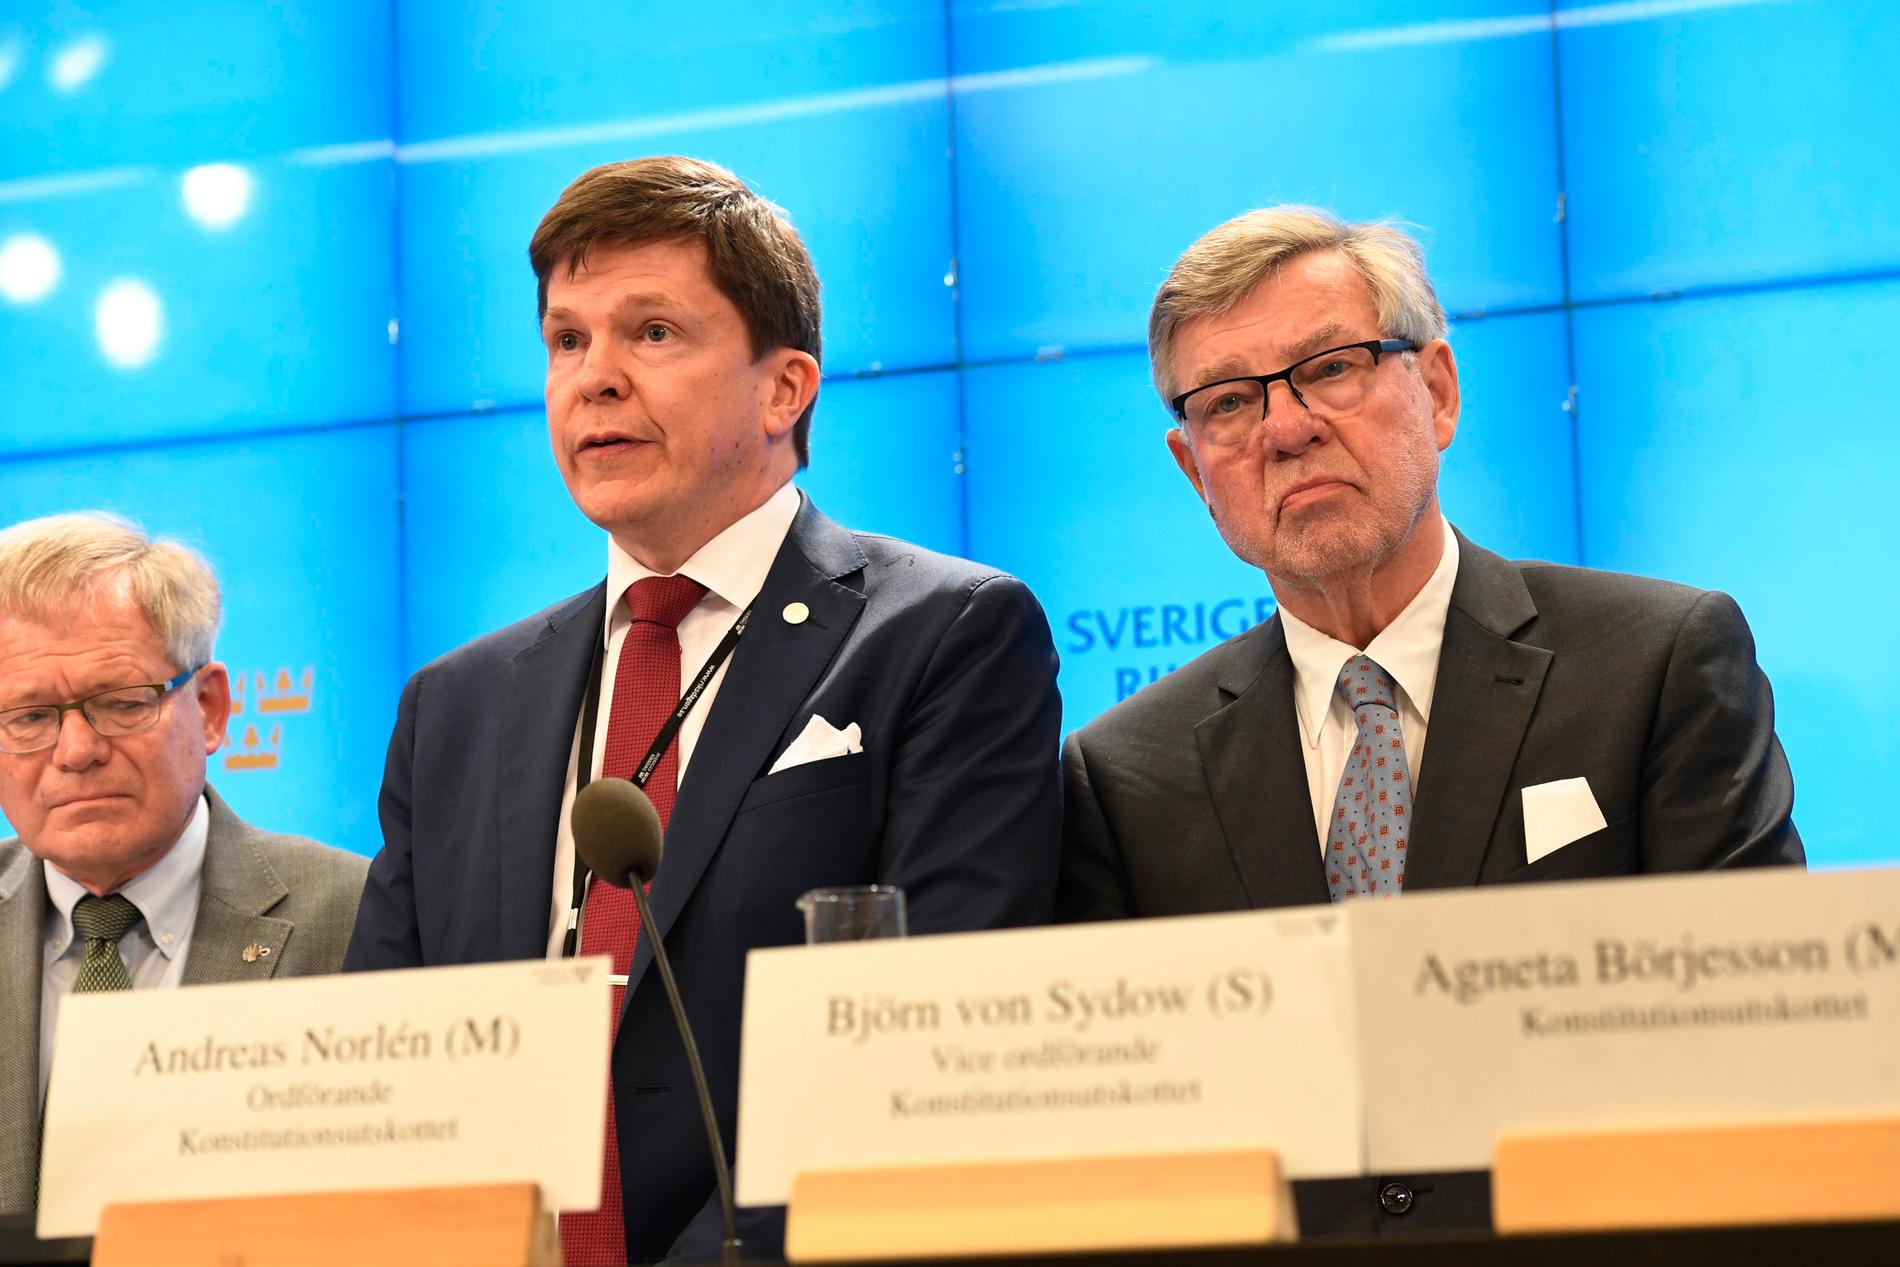 Per-Ingvar Johnsson (C), ordförande Andreas Norlén (M) och Björn von Sydow (S) om dagens prickning i KU.